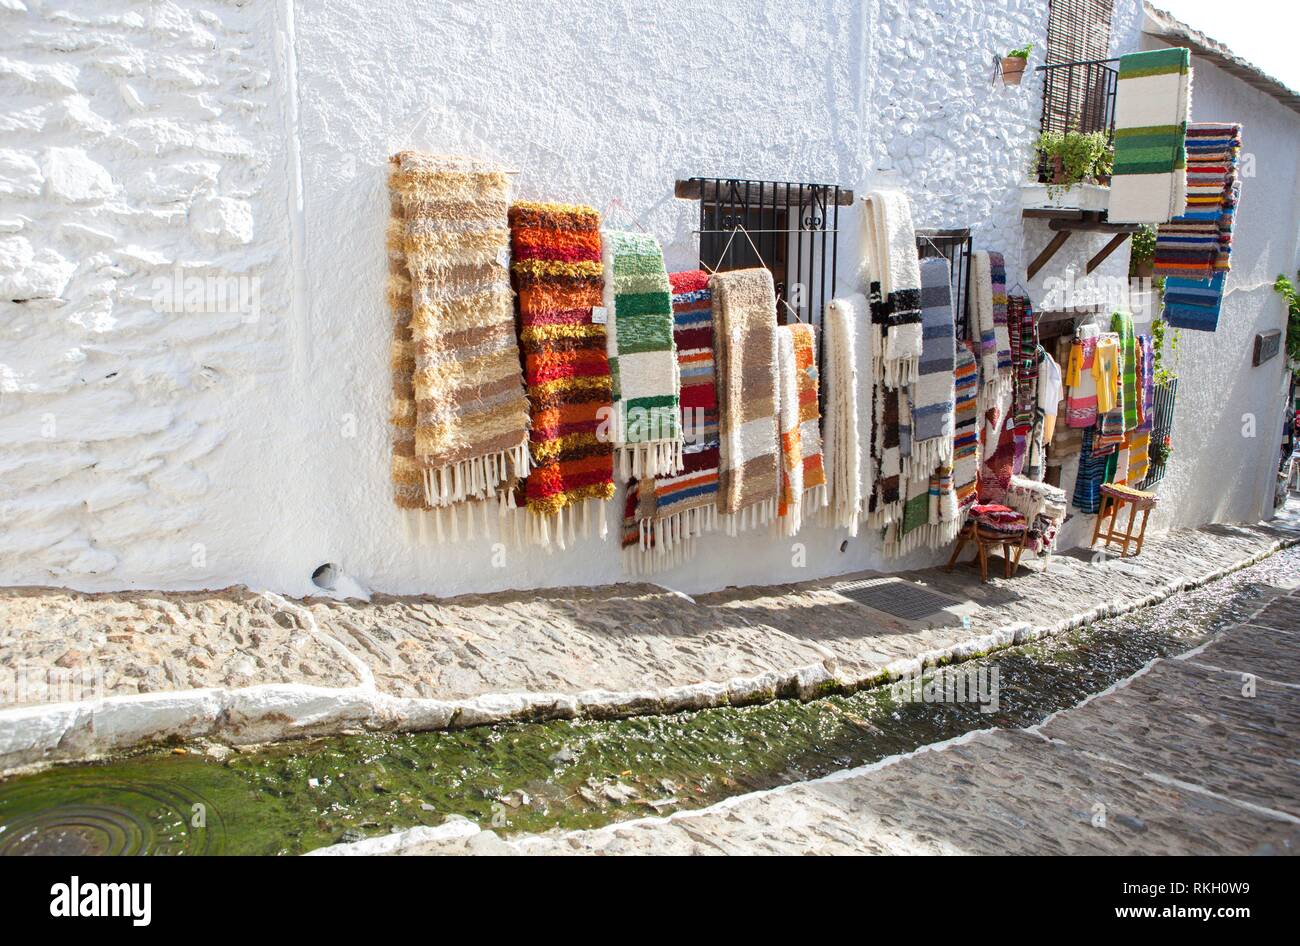 Jarapas para vender muestran sobre las paredes en una tranquila calle con canal de agua bastante en el oriente, Alpujarras, Granada, España. Foto de stock